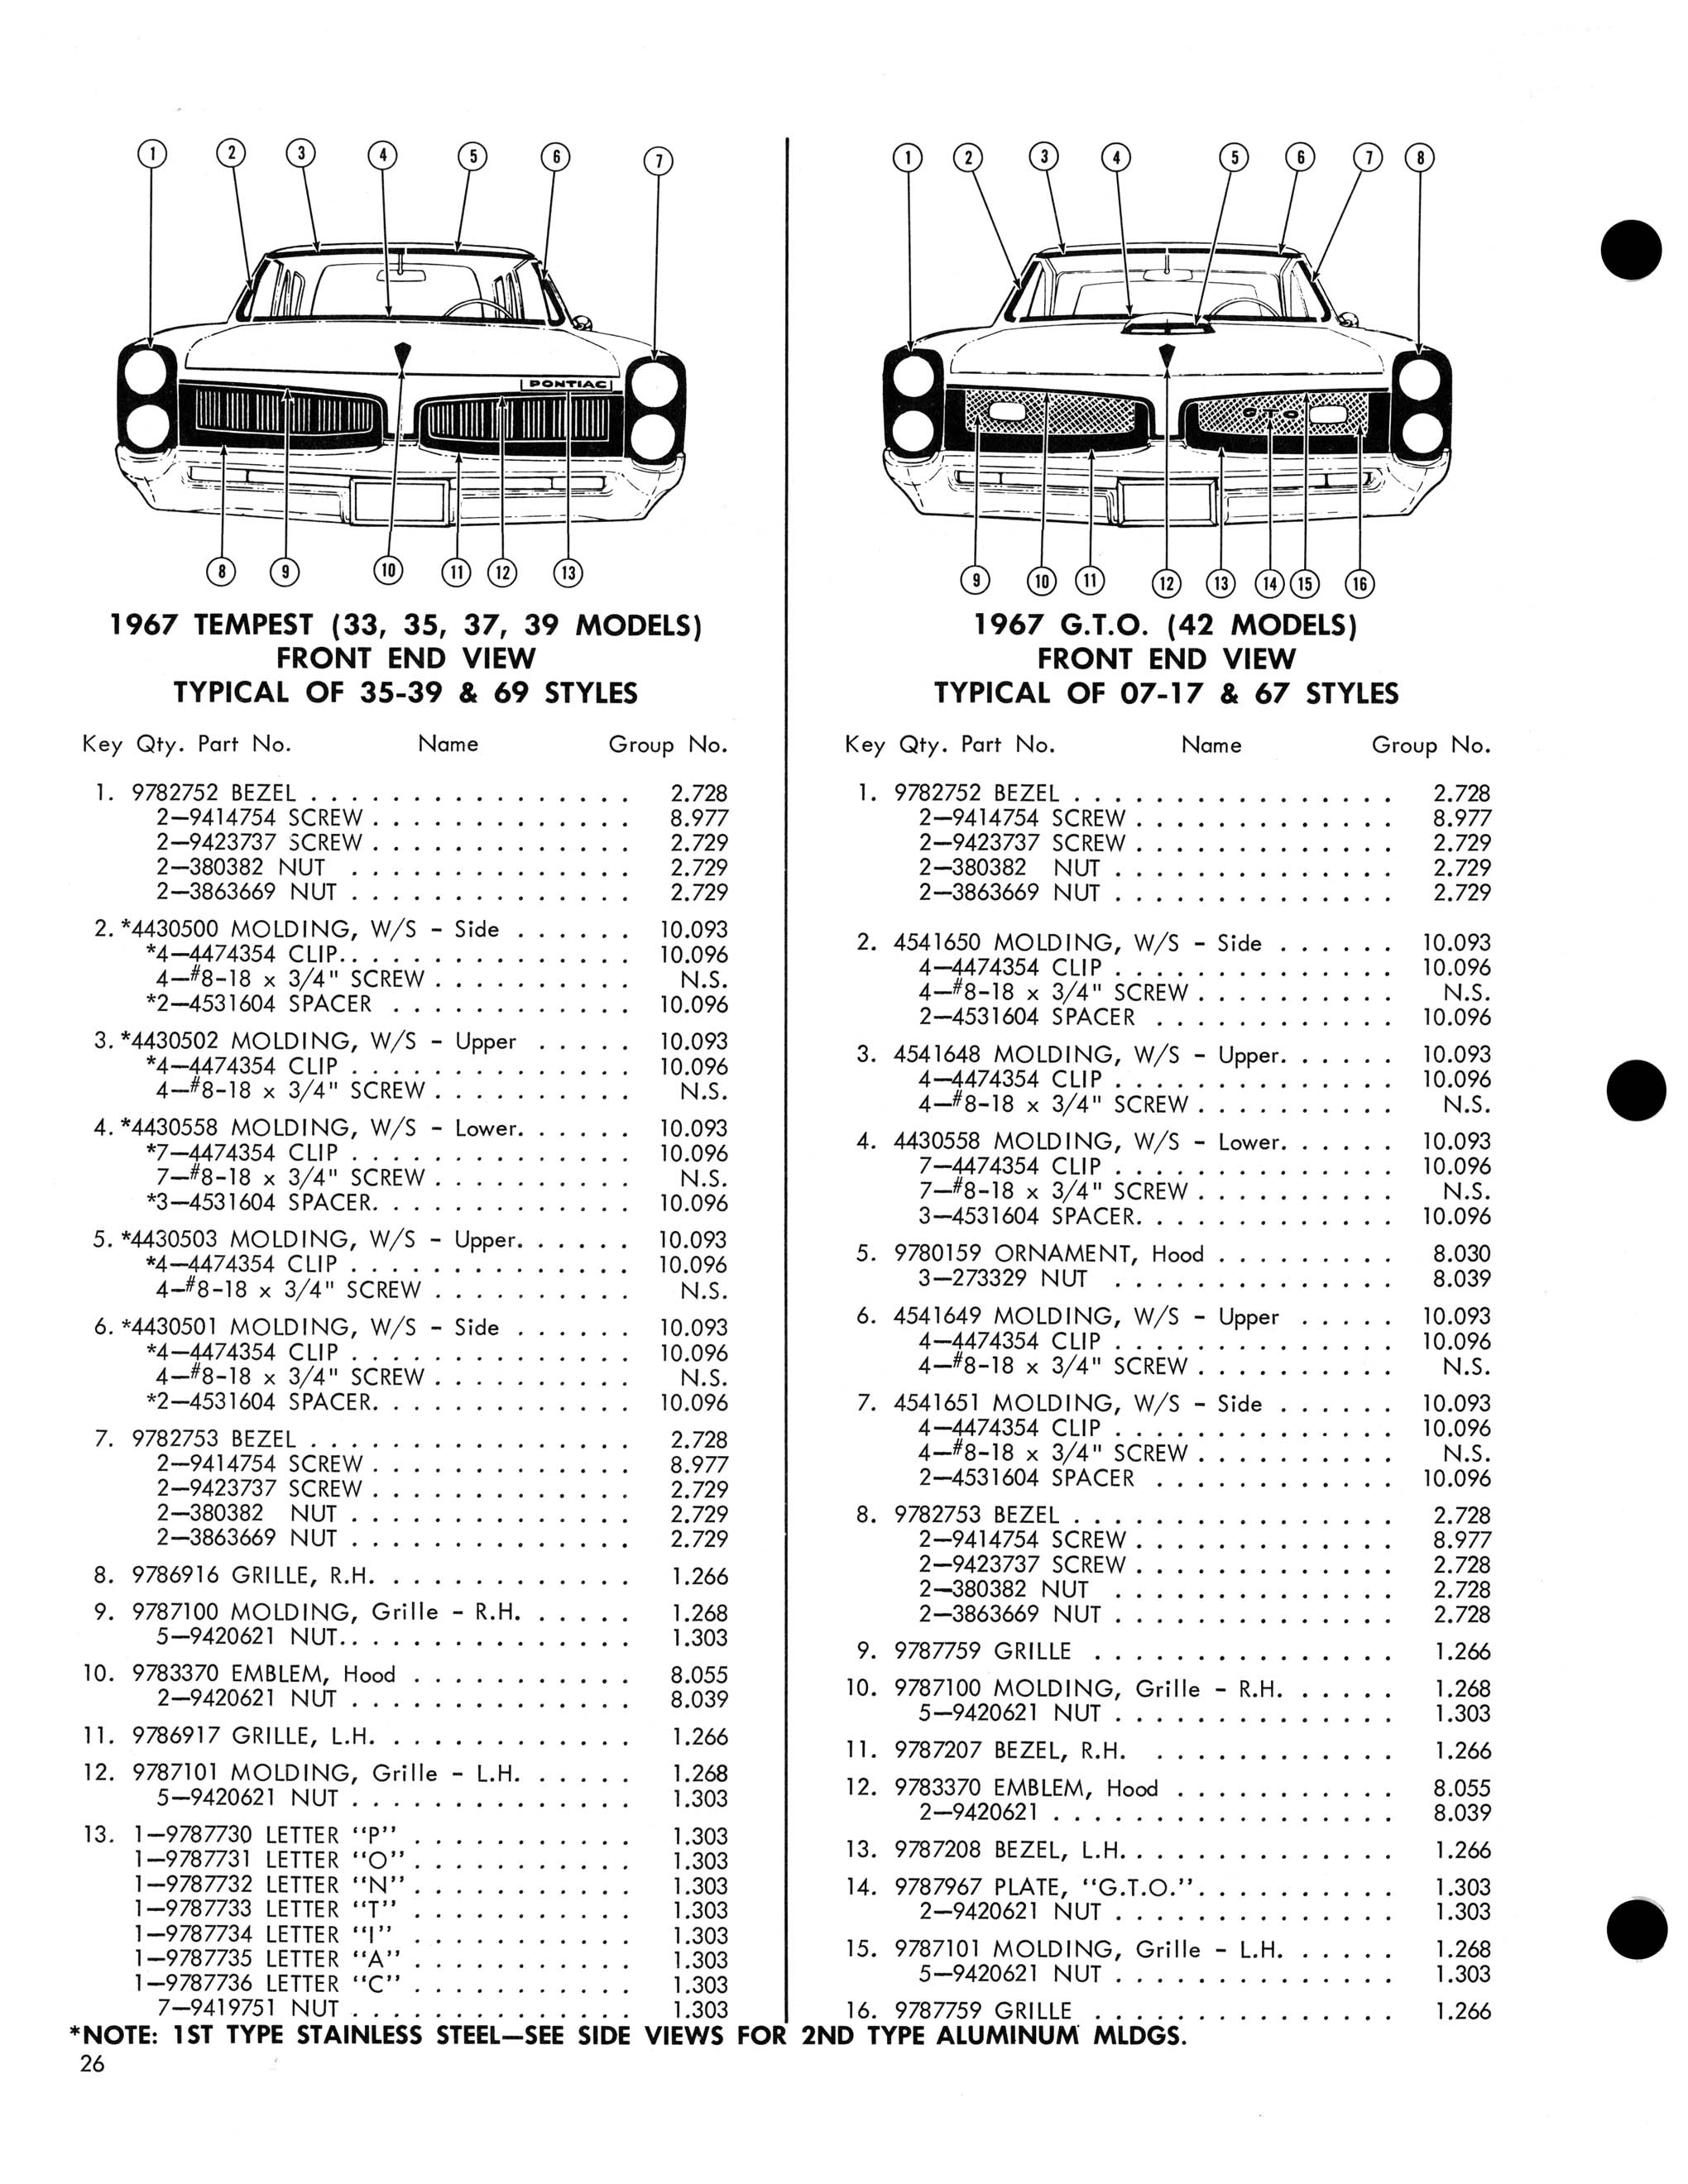 1967 Pontiac Molding and Clip Catalog-26